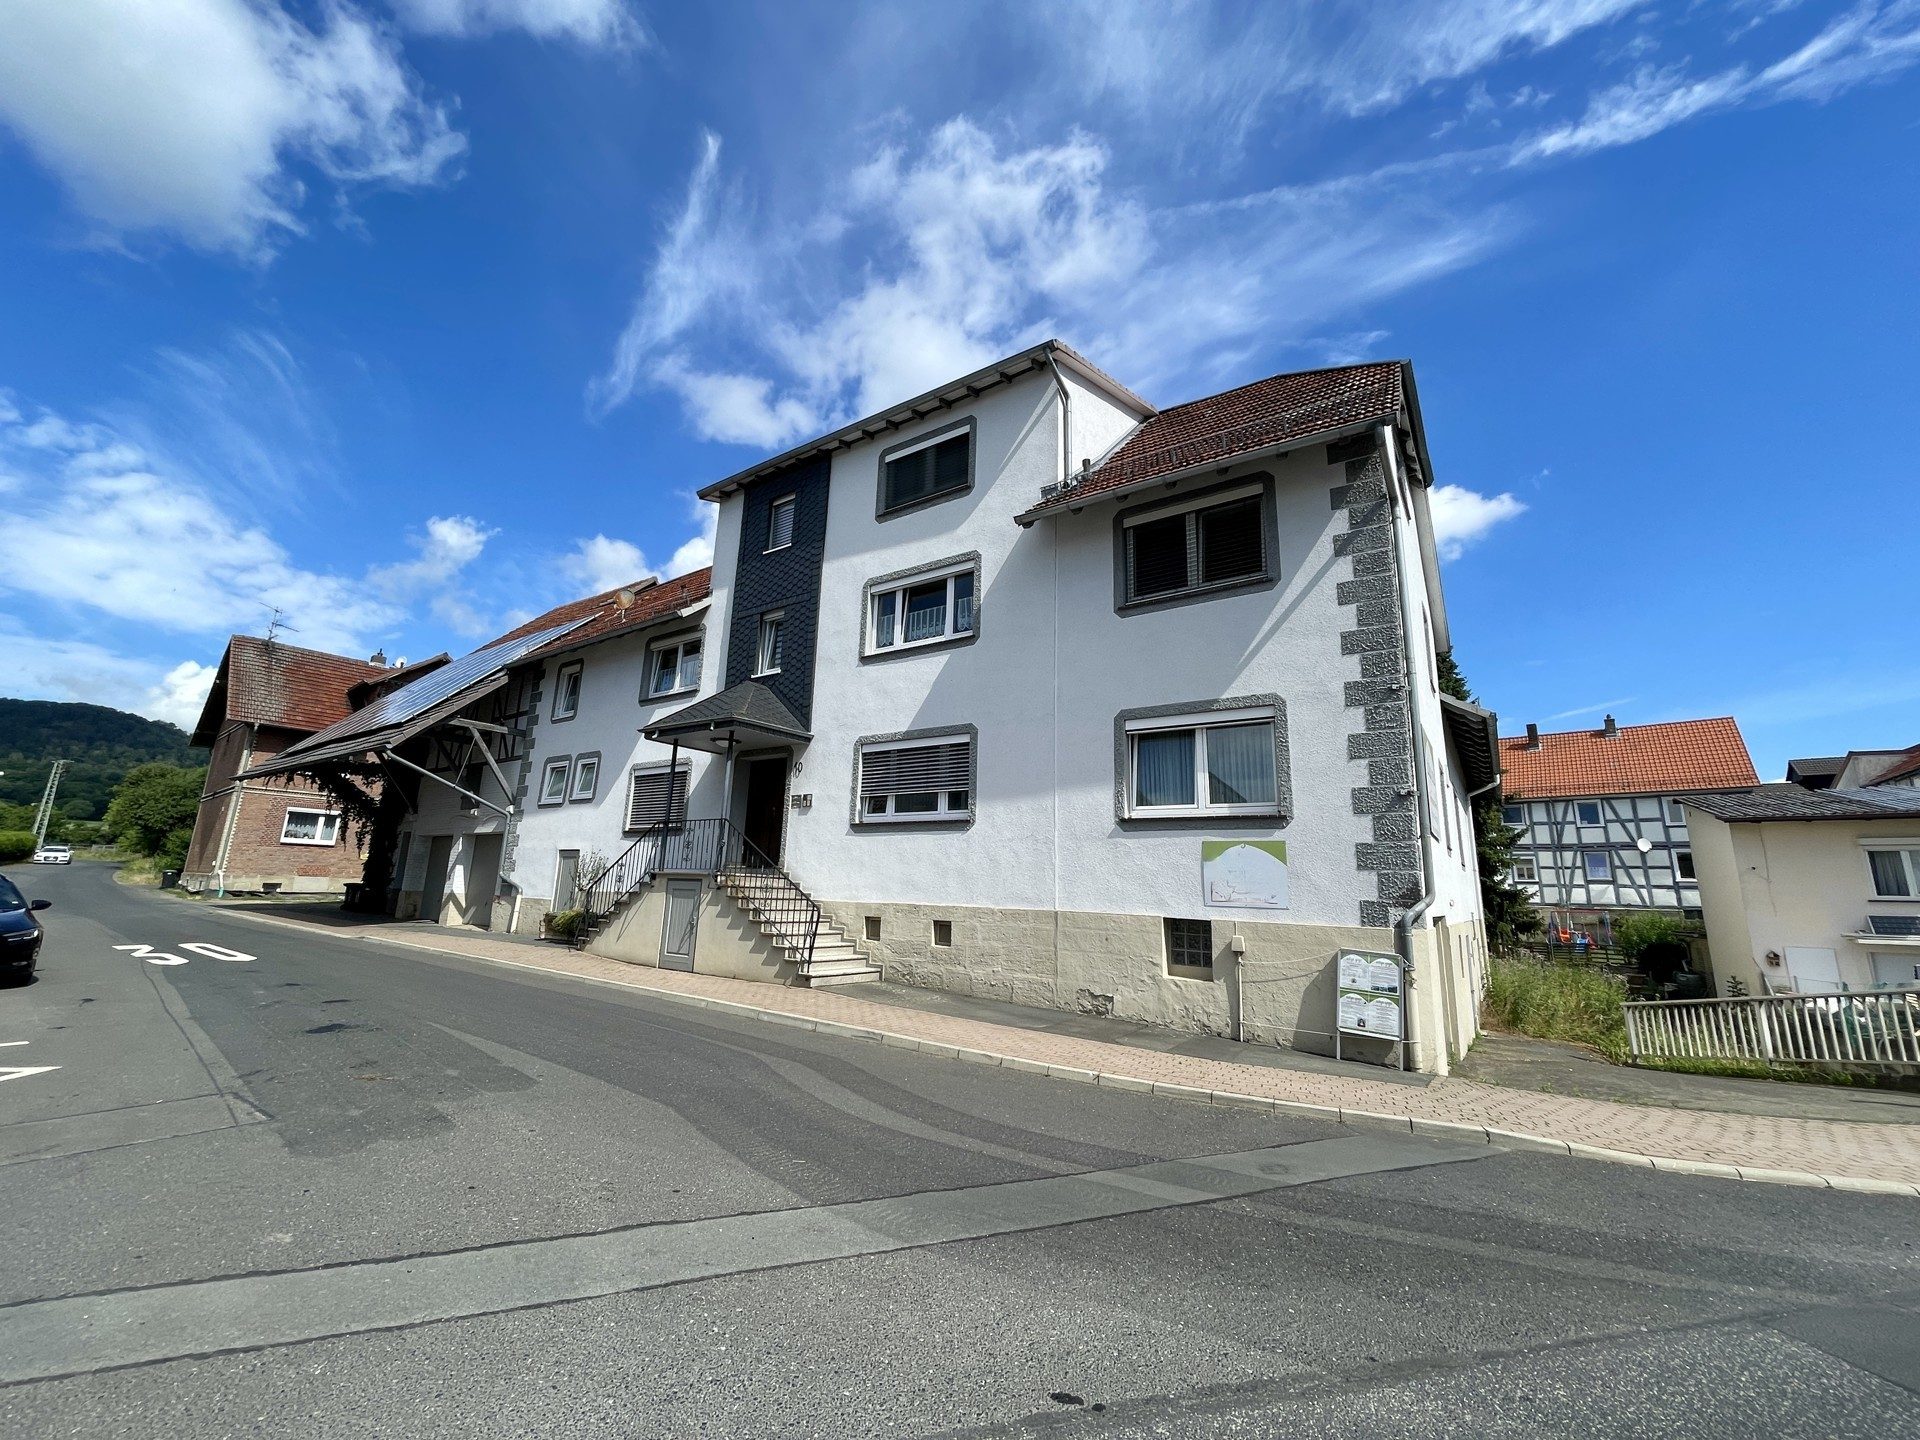 Immobilienangebot - Edermünde - Alle - Wohn- und Gewerbeimmobilie zentral in Besse!
KEINE KÄUFERPROVISION